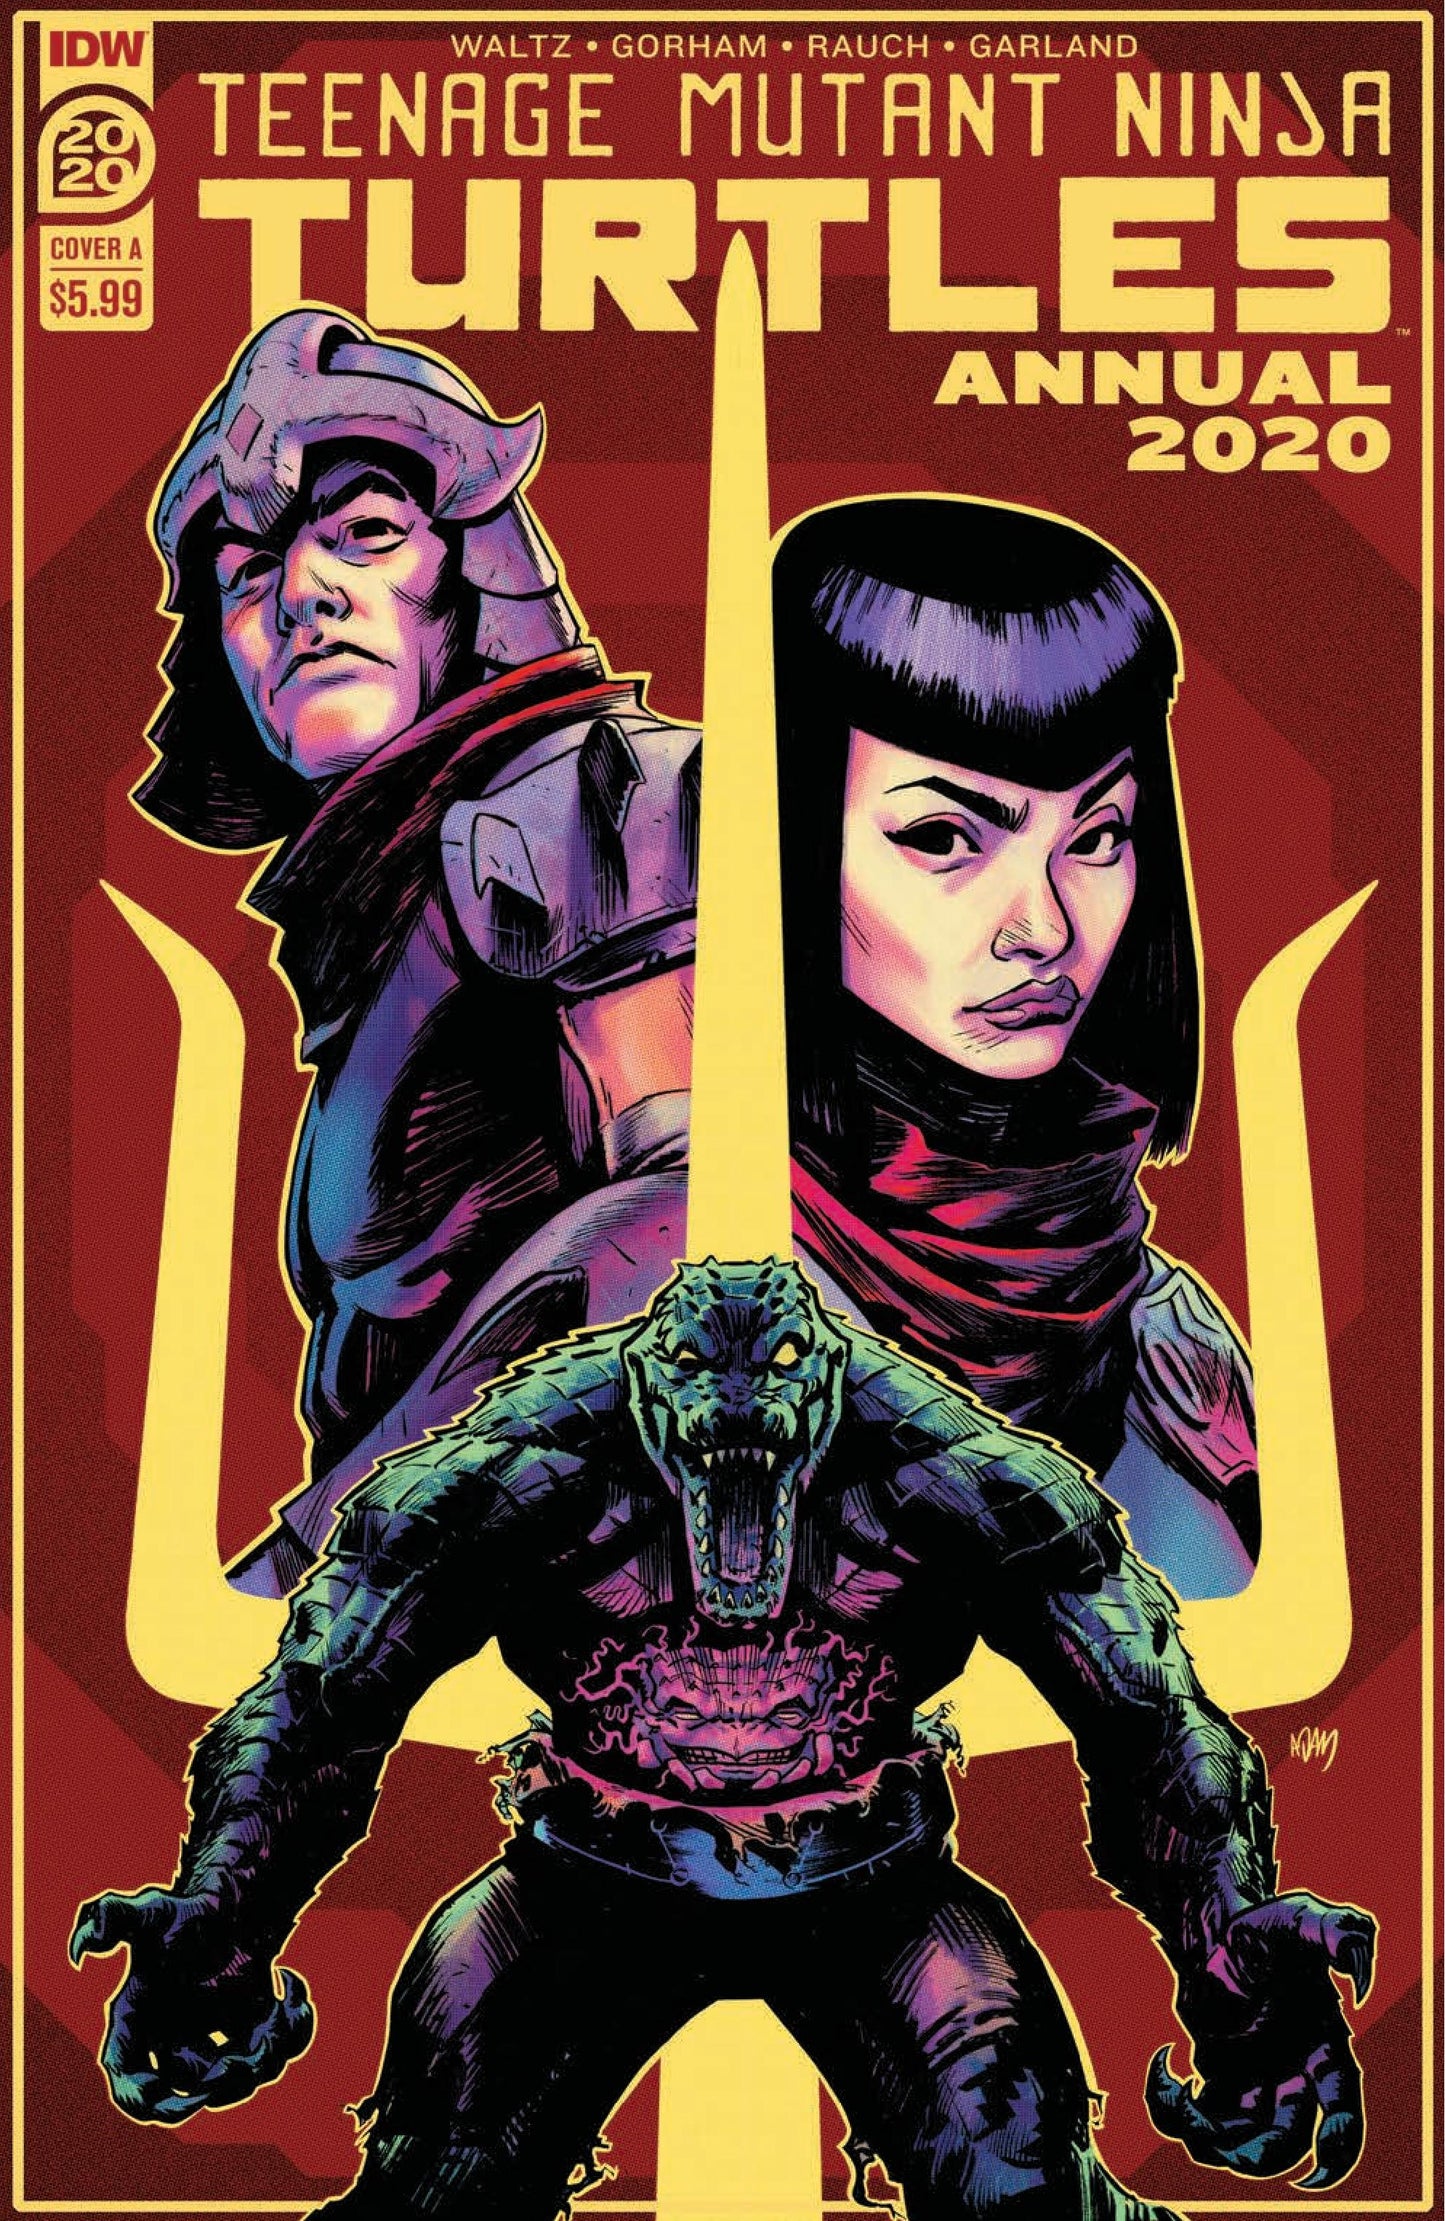 Teenage Mutant Ninja Turtles Annual 2020